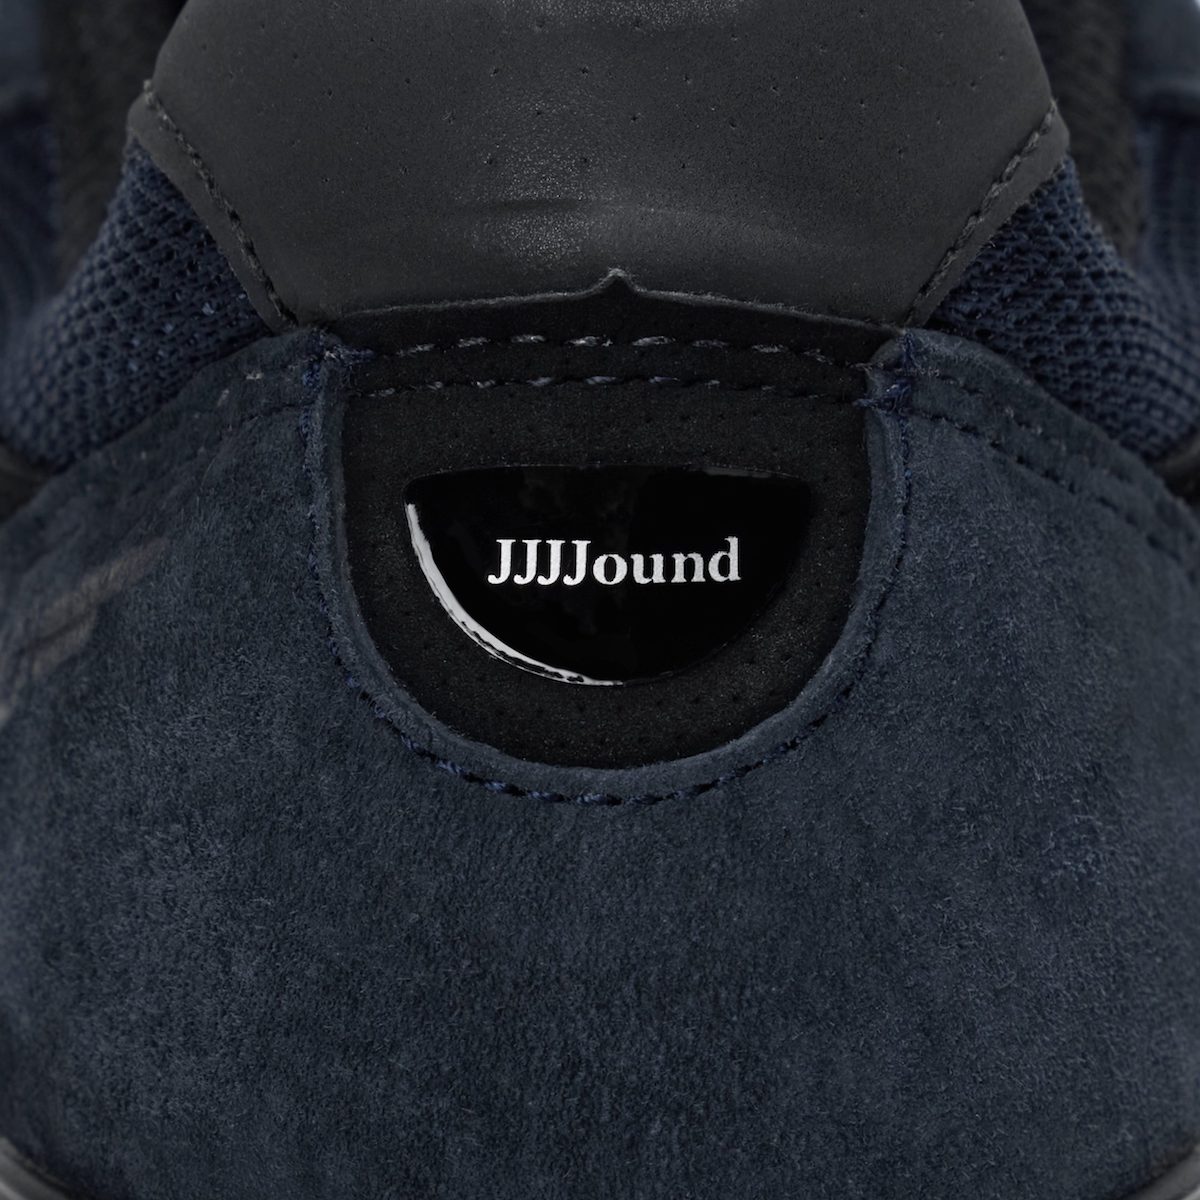 JJJJound x New Balance 990v4 Navy Release Date